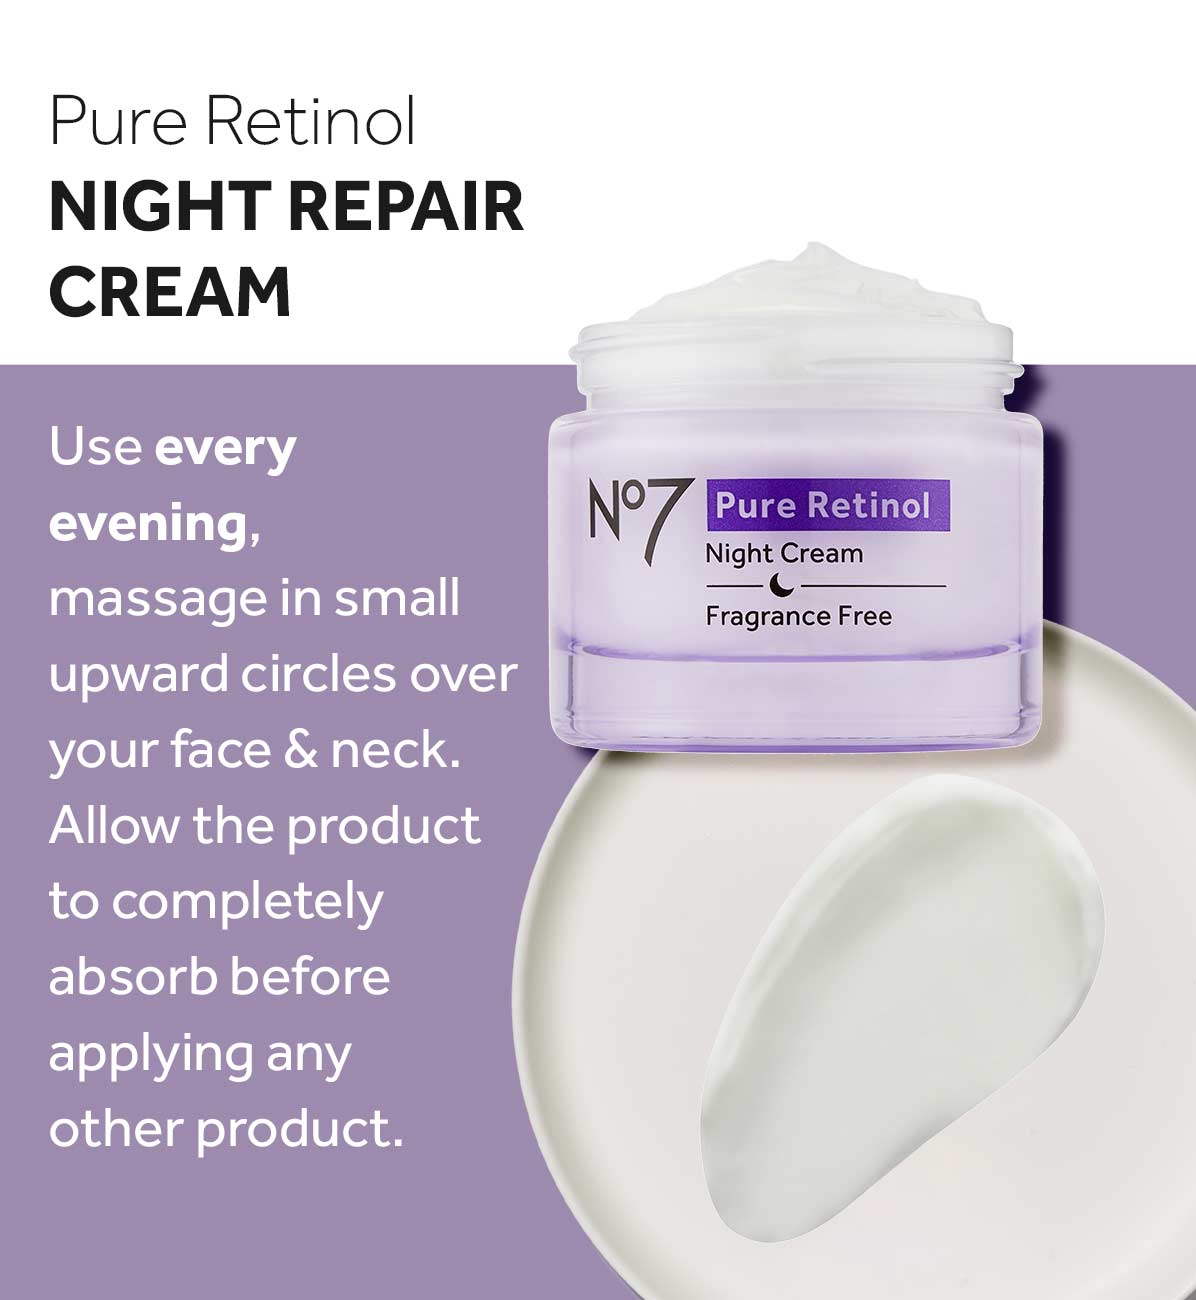 Pure Retinol Night Repair Cream how to use 